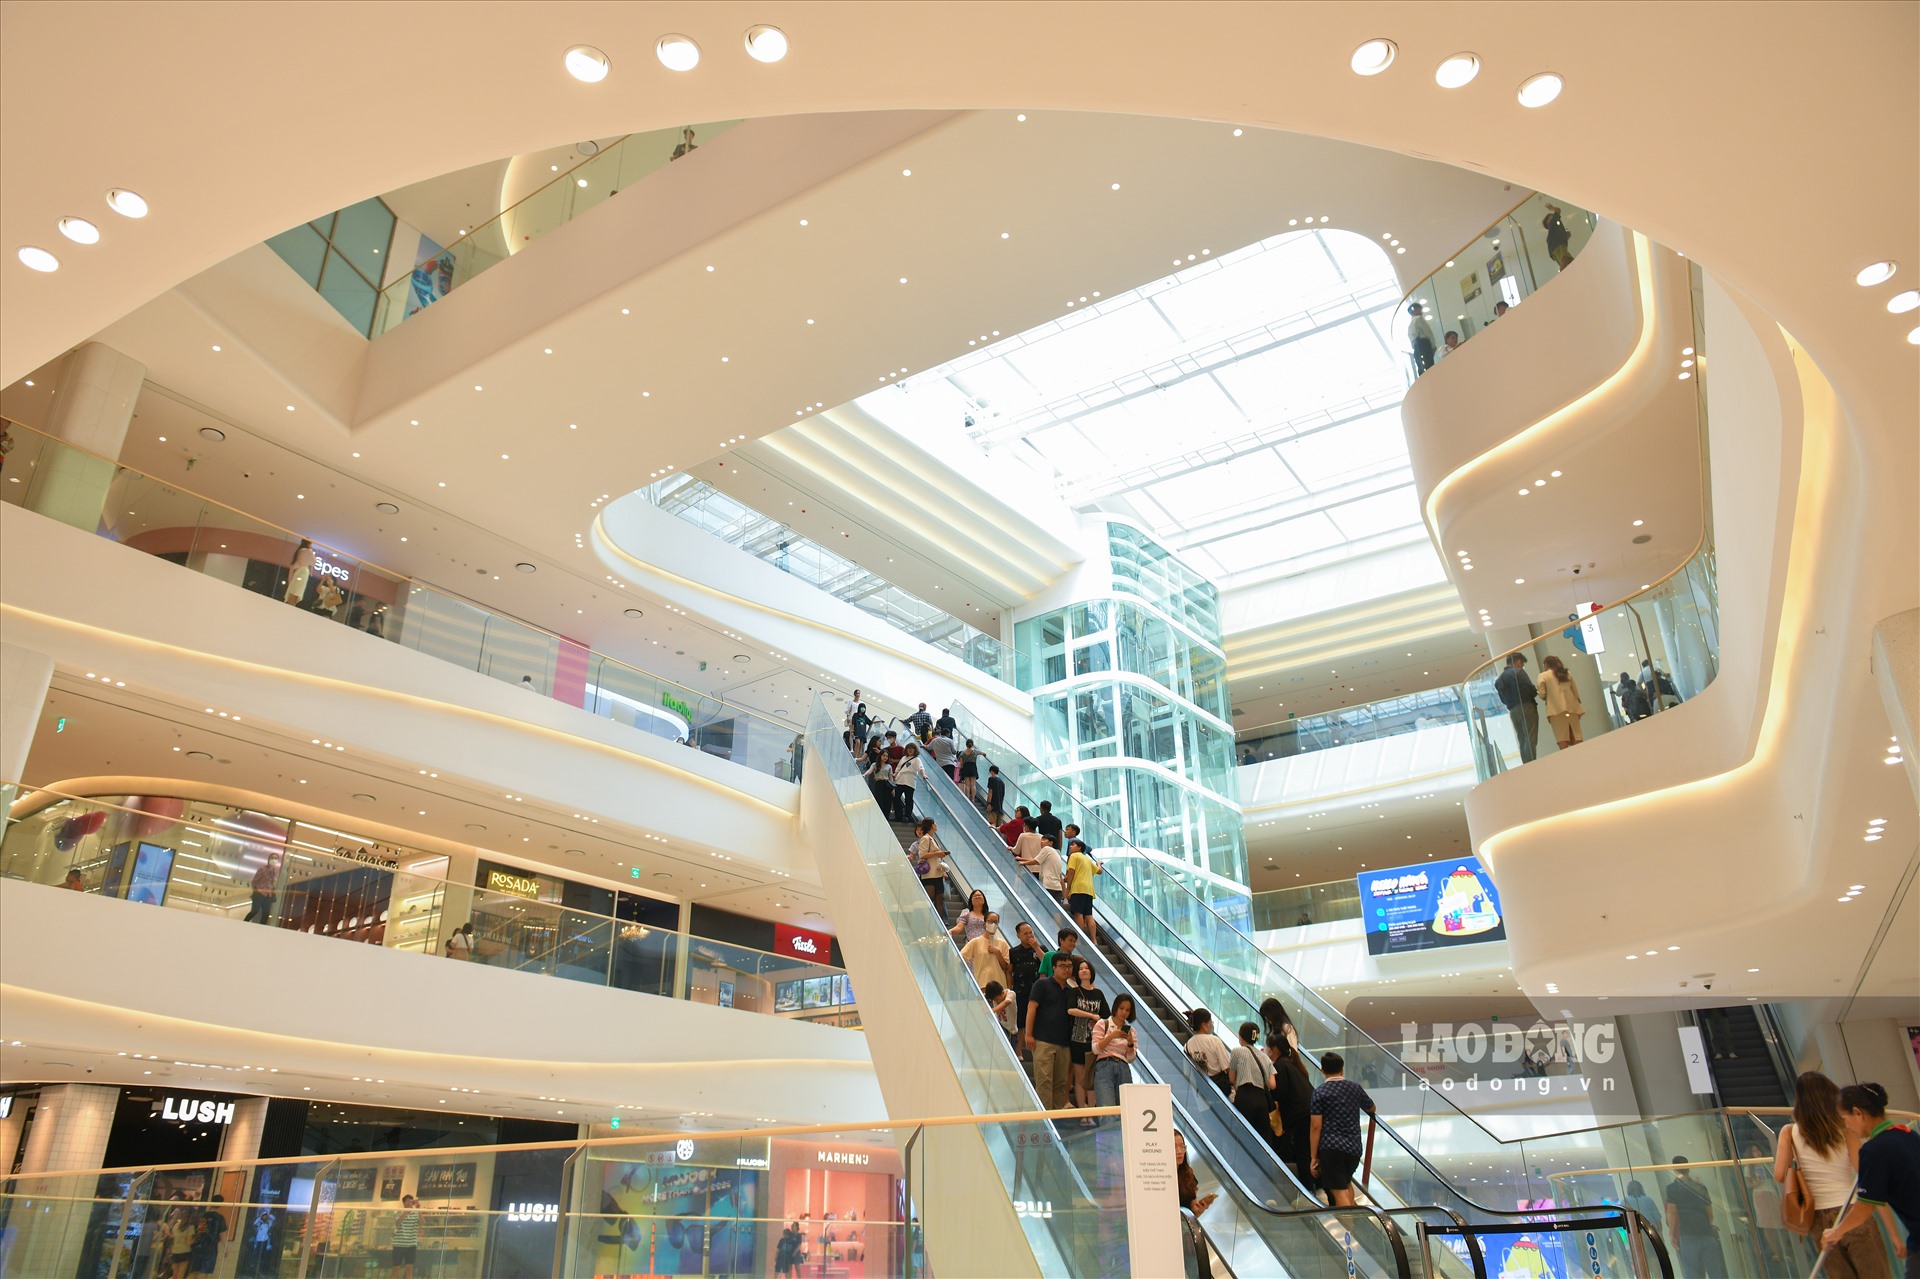 Được thiết kế theo phong cách Hàn Quốc, hoàn toàn mới lạ so với các trung tâm thương mại khác của Hà Nội. Ngoài ra, việc tận dụng ánh sáng bên ngoài cũng khiến không gian bên trong trở nên thoáng đãng hơn.